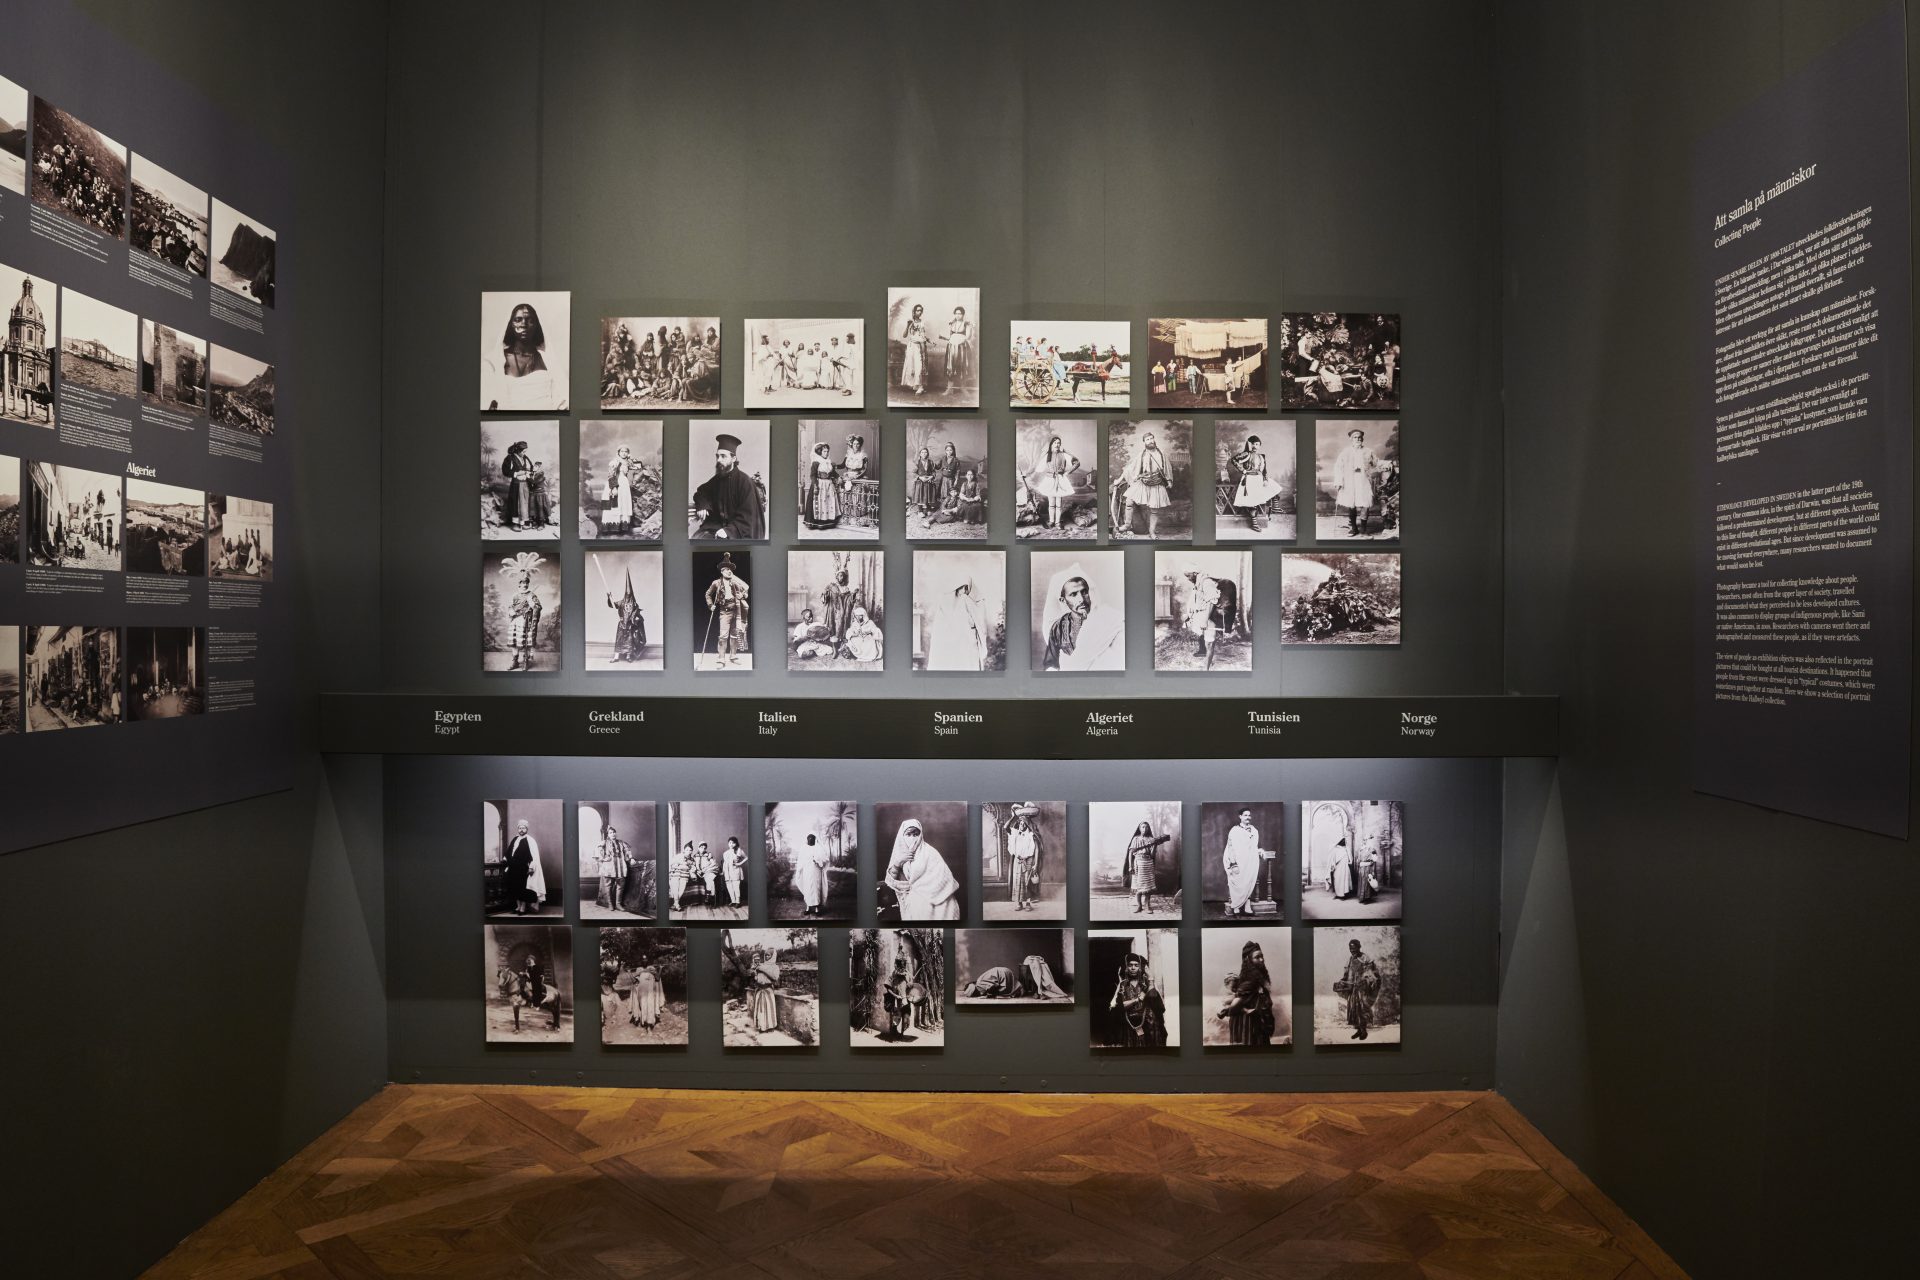 Bilder från familjens resa som hängts upp i en utställningsmiljö.